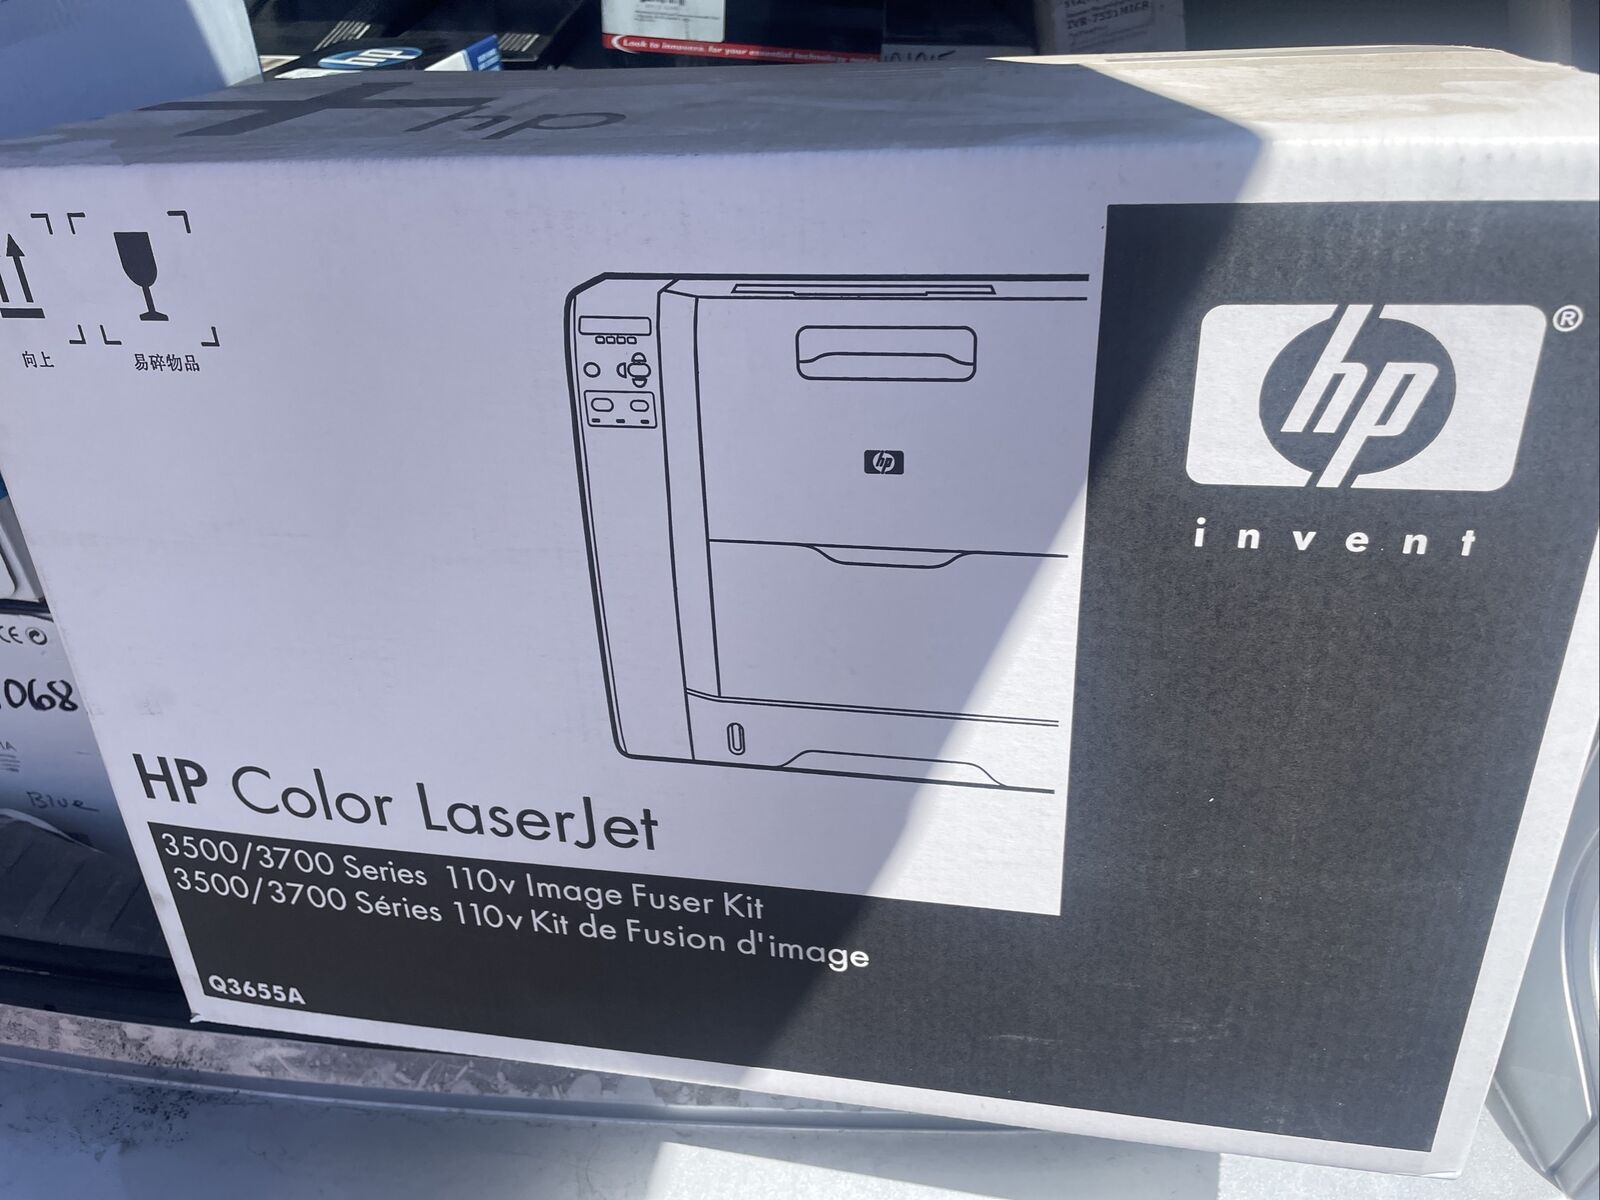 New Genuine Sealed HP Q3655A Fuser for Color Laserjet 3500/3700 Series